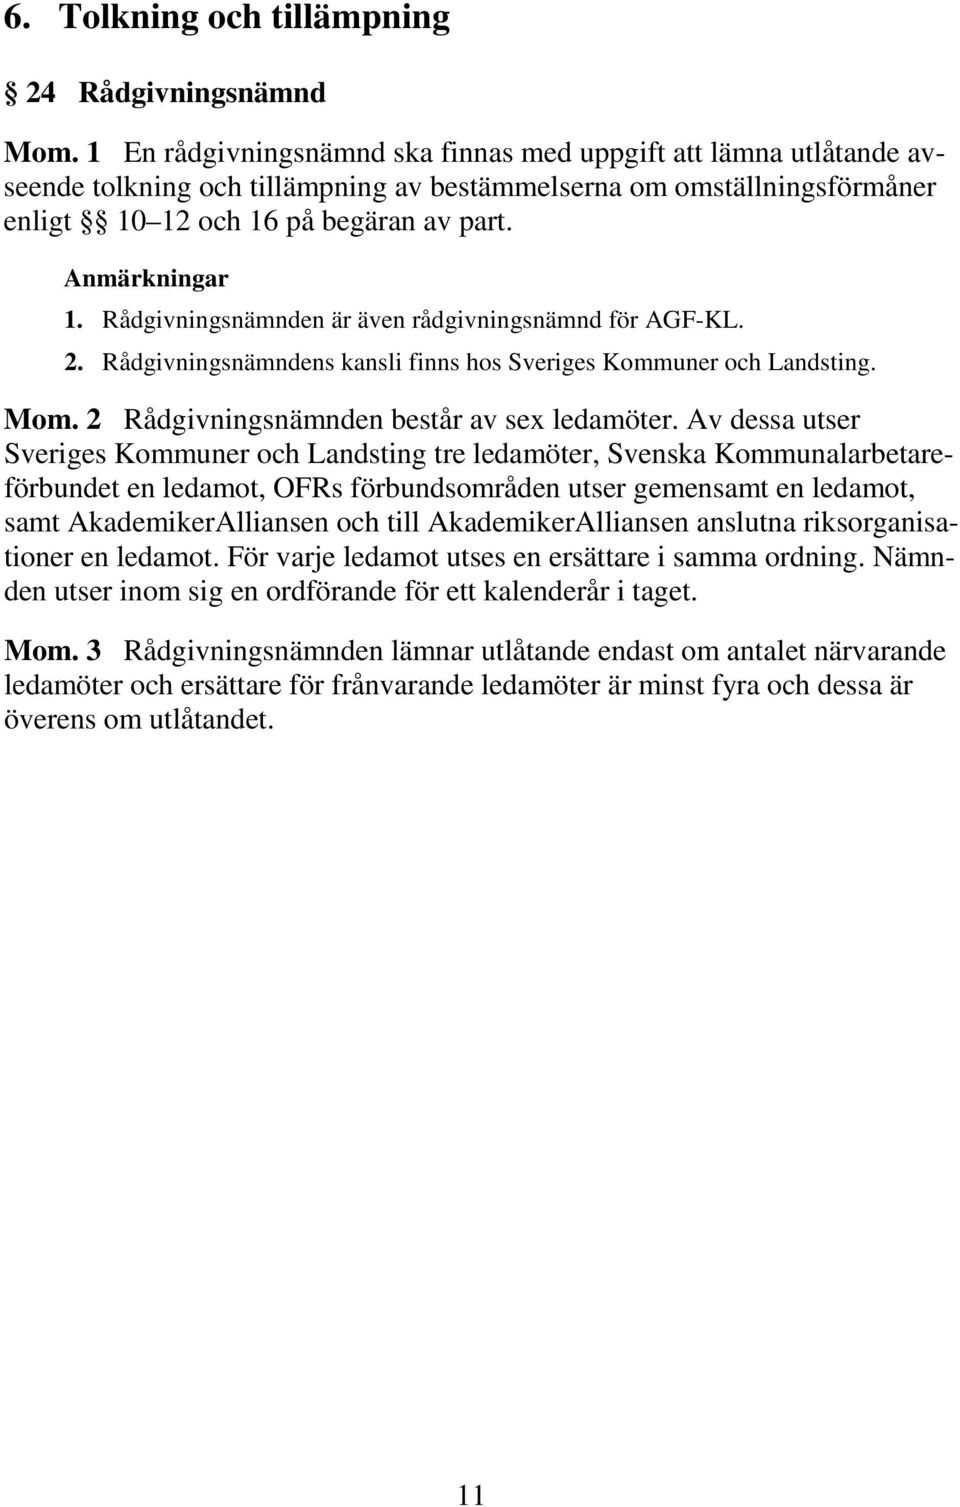 Rådgivningsnämnden är även rådgivningsnämnd för AGF-KL. 2. Rådgivningsnämndens kansli finns hos Sveriges Kommuner och Landsting. Mom. 2 Rådgivningsnämnden består av sex ledamöter.